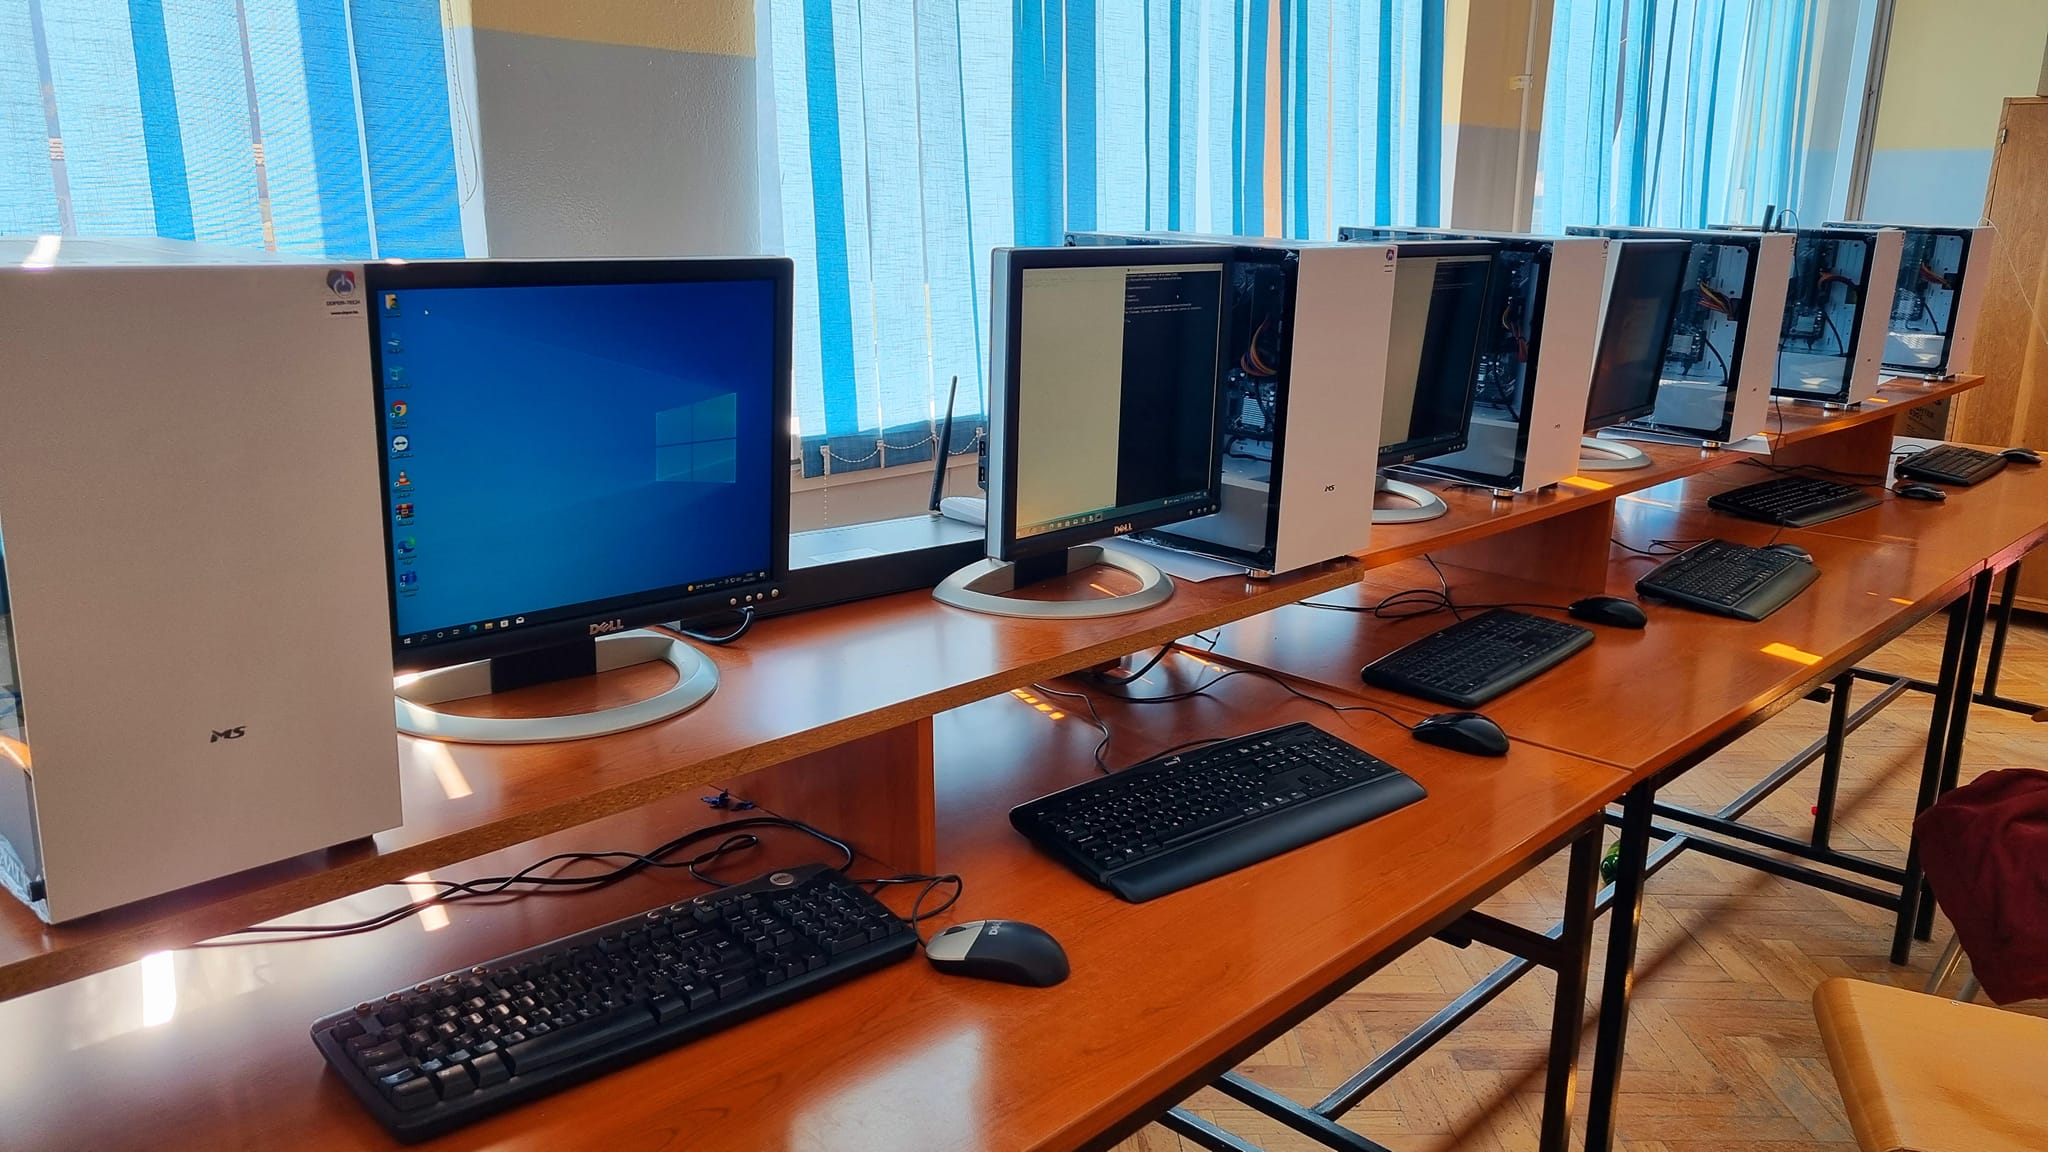 Srednja škola Kreševo ima novu informatičku opremu zahvaljujući Vladi Republike Hrvatske